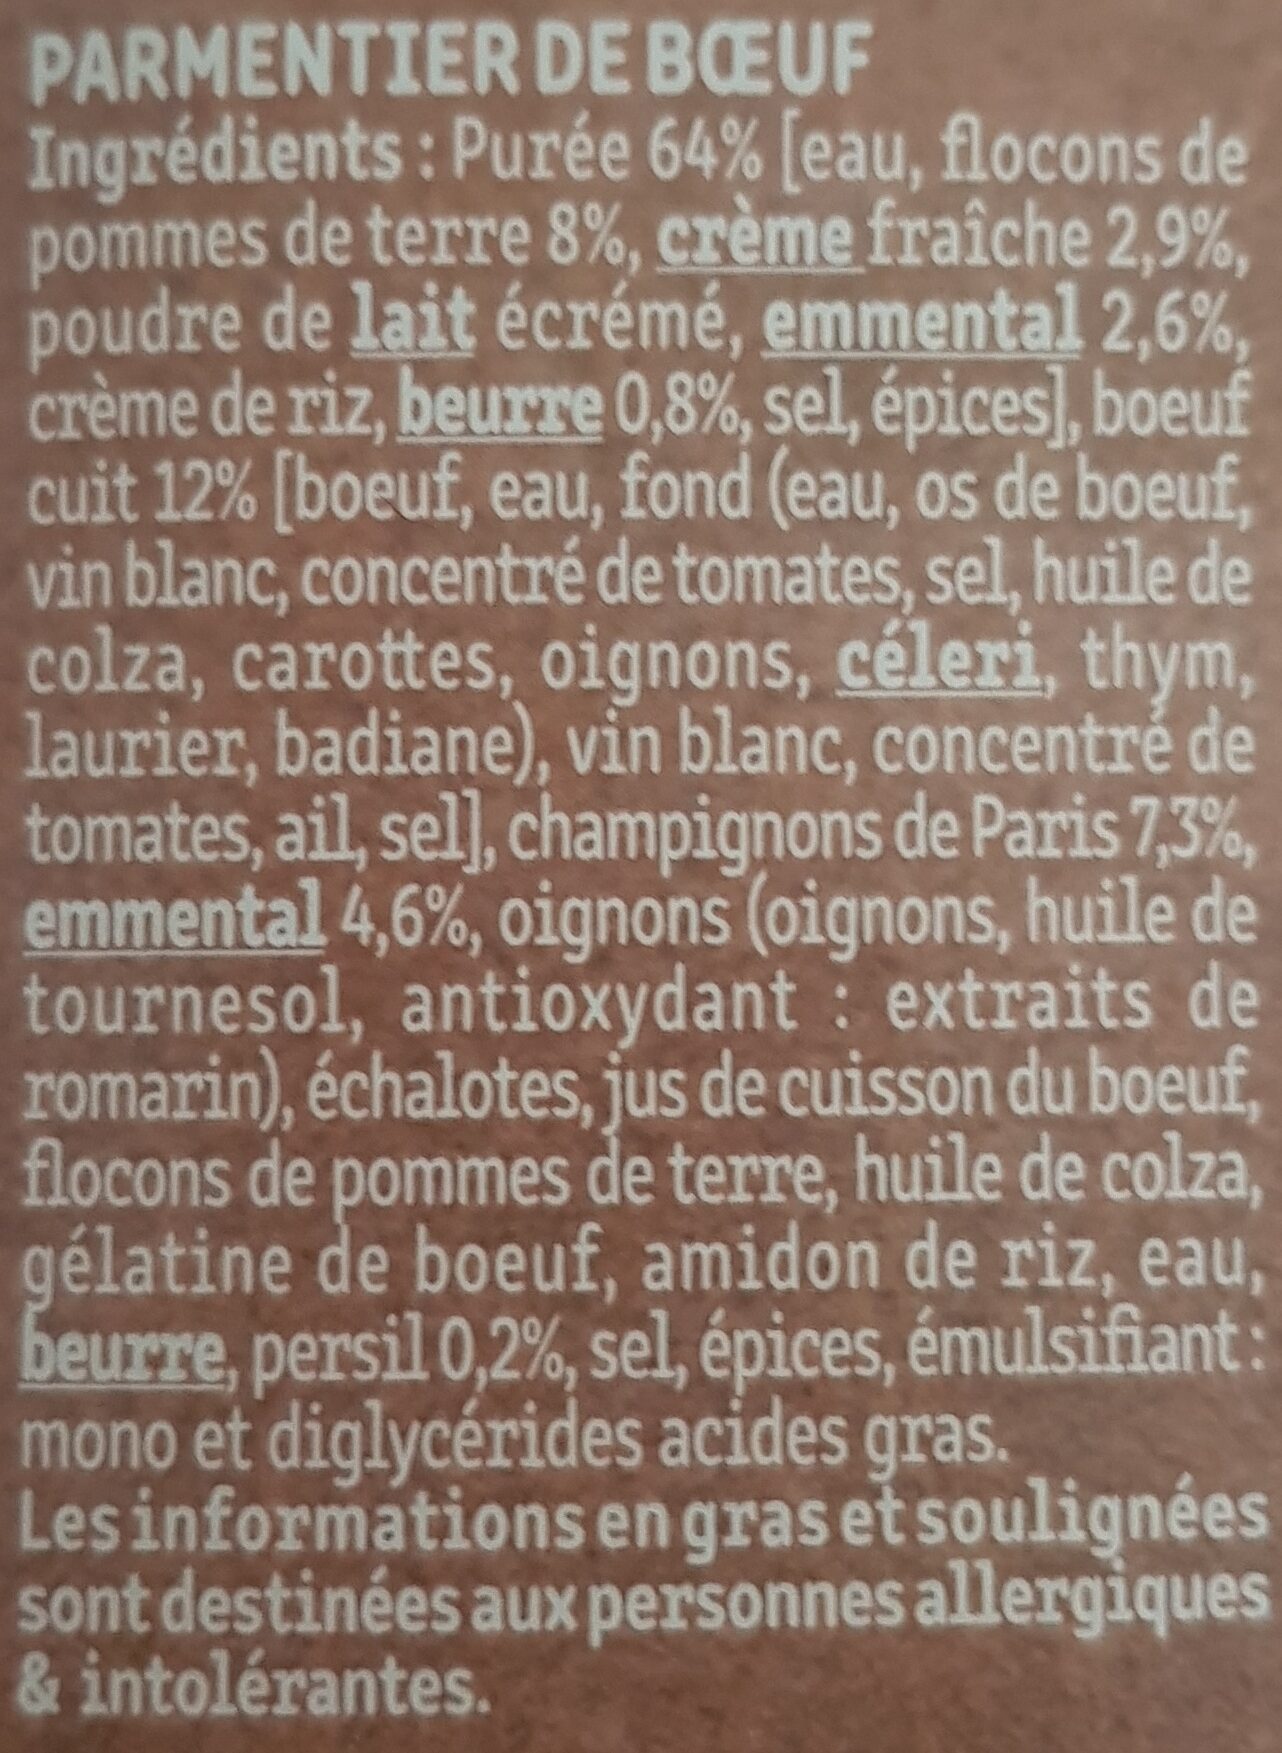 Le Parmentier de Boeuf Charolais purée à la crème fraîche - Ingredients - fr